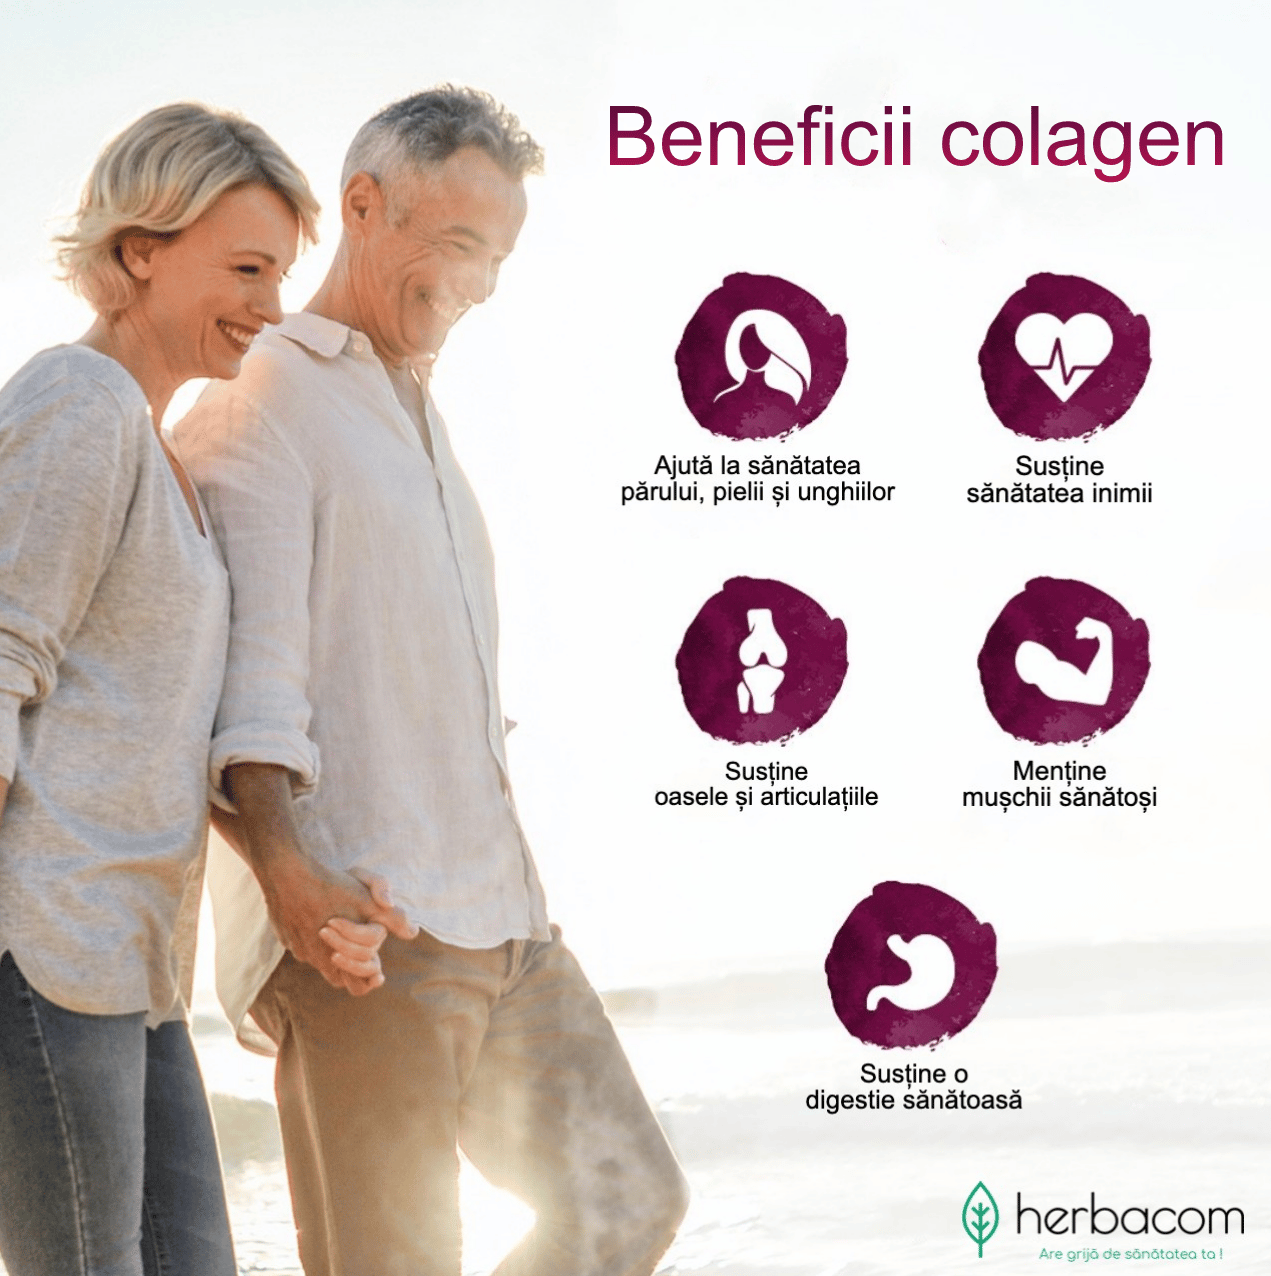 Colagen Hidrolizat, 2250 mg doza, 200 tablete constituentul proteic fibros al pielii, cartilajelor, oaselor si altor tesuturi conjunctive